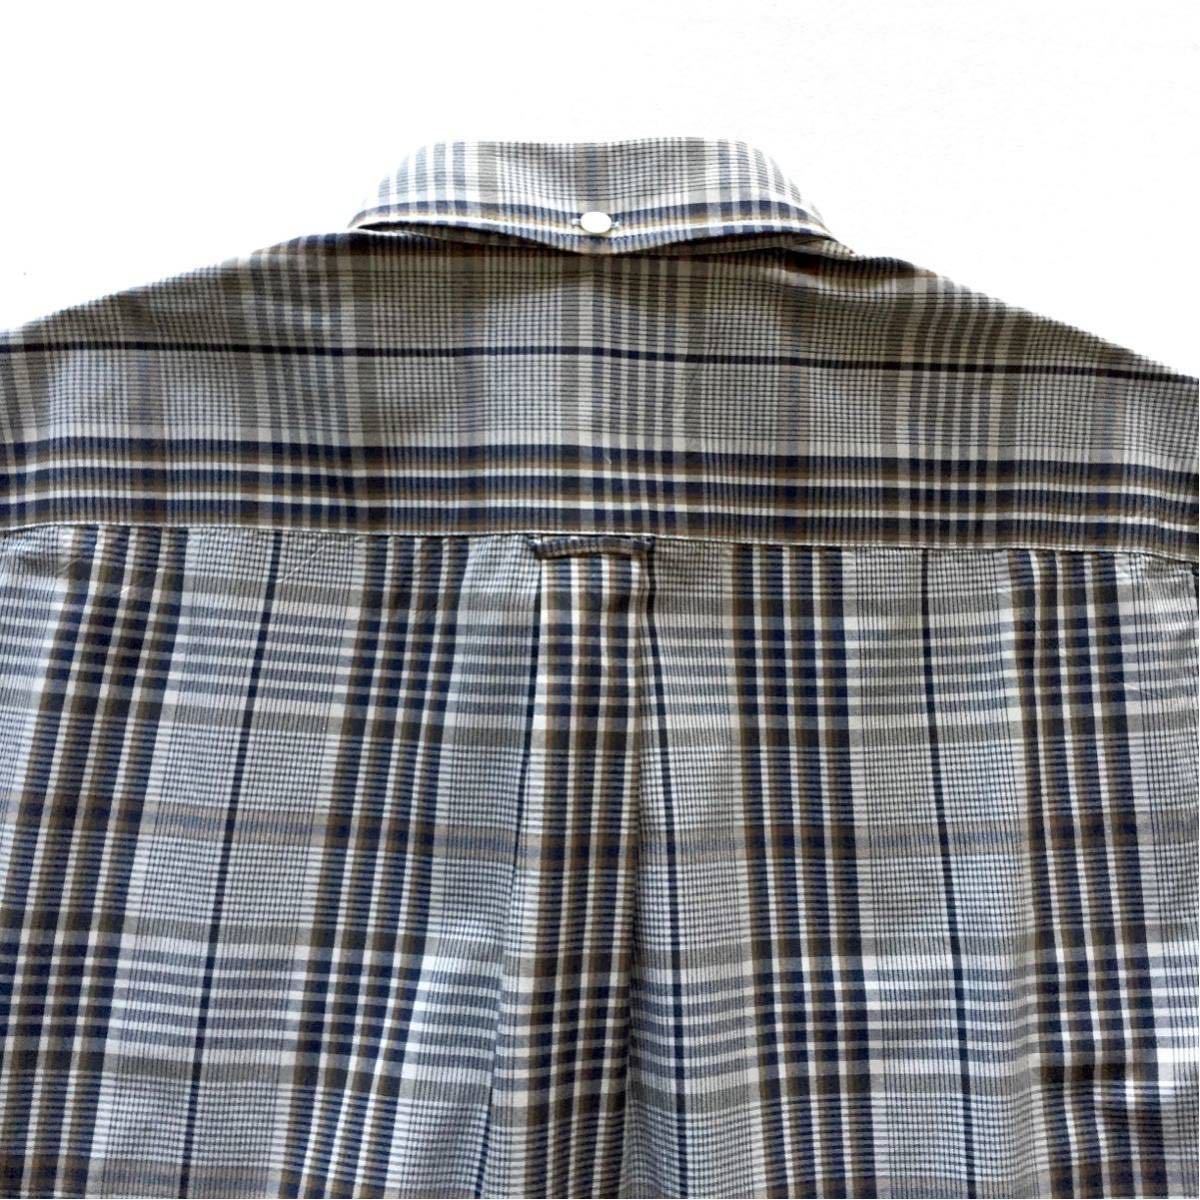  как новый BEAMS PLUS Button down Plaid shirt Beams плюс кнопка down проверка рубашка S размер рубашка с длинным рукавом сделано в Японии JAPANMADE BEAMS+